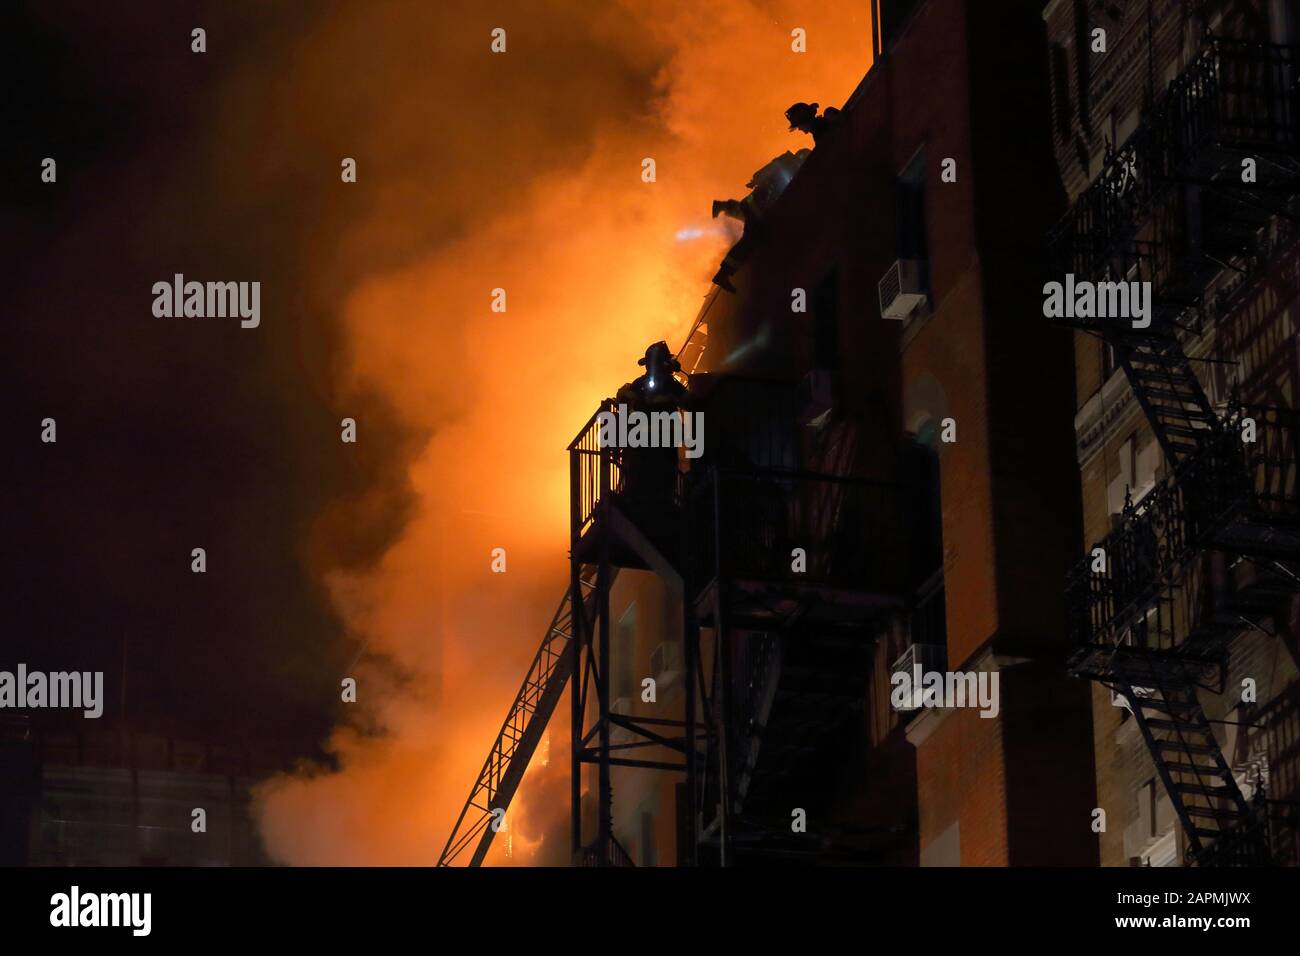 (Nueva York, NY, 23 de enero de 2020) 9pm. Los bomberos en la parte superior de una salida de incendios y en la azotea de un centro comunitario en el fuego en 70 Mulberry St. El fuego Foto de stock